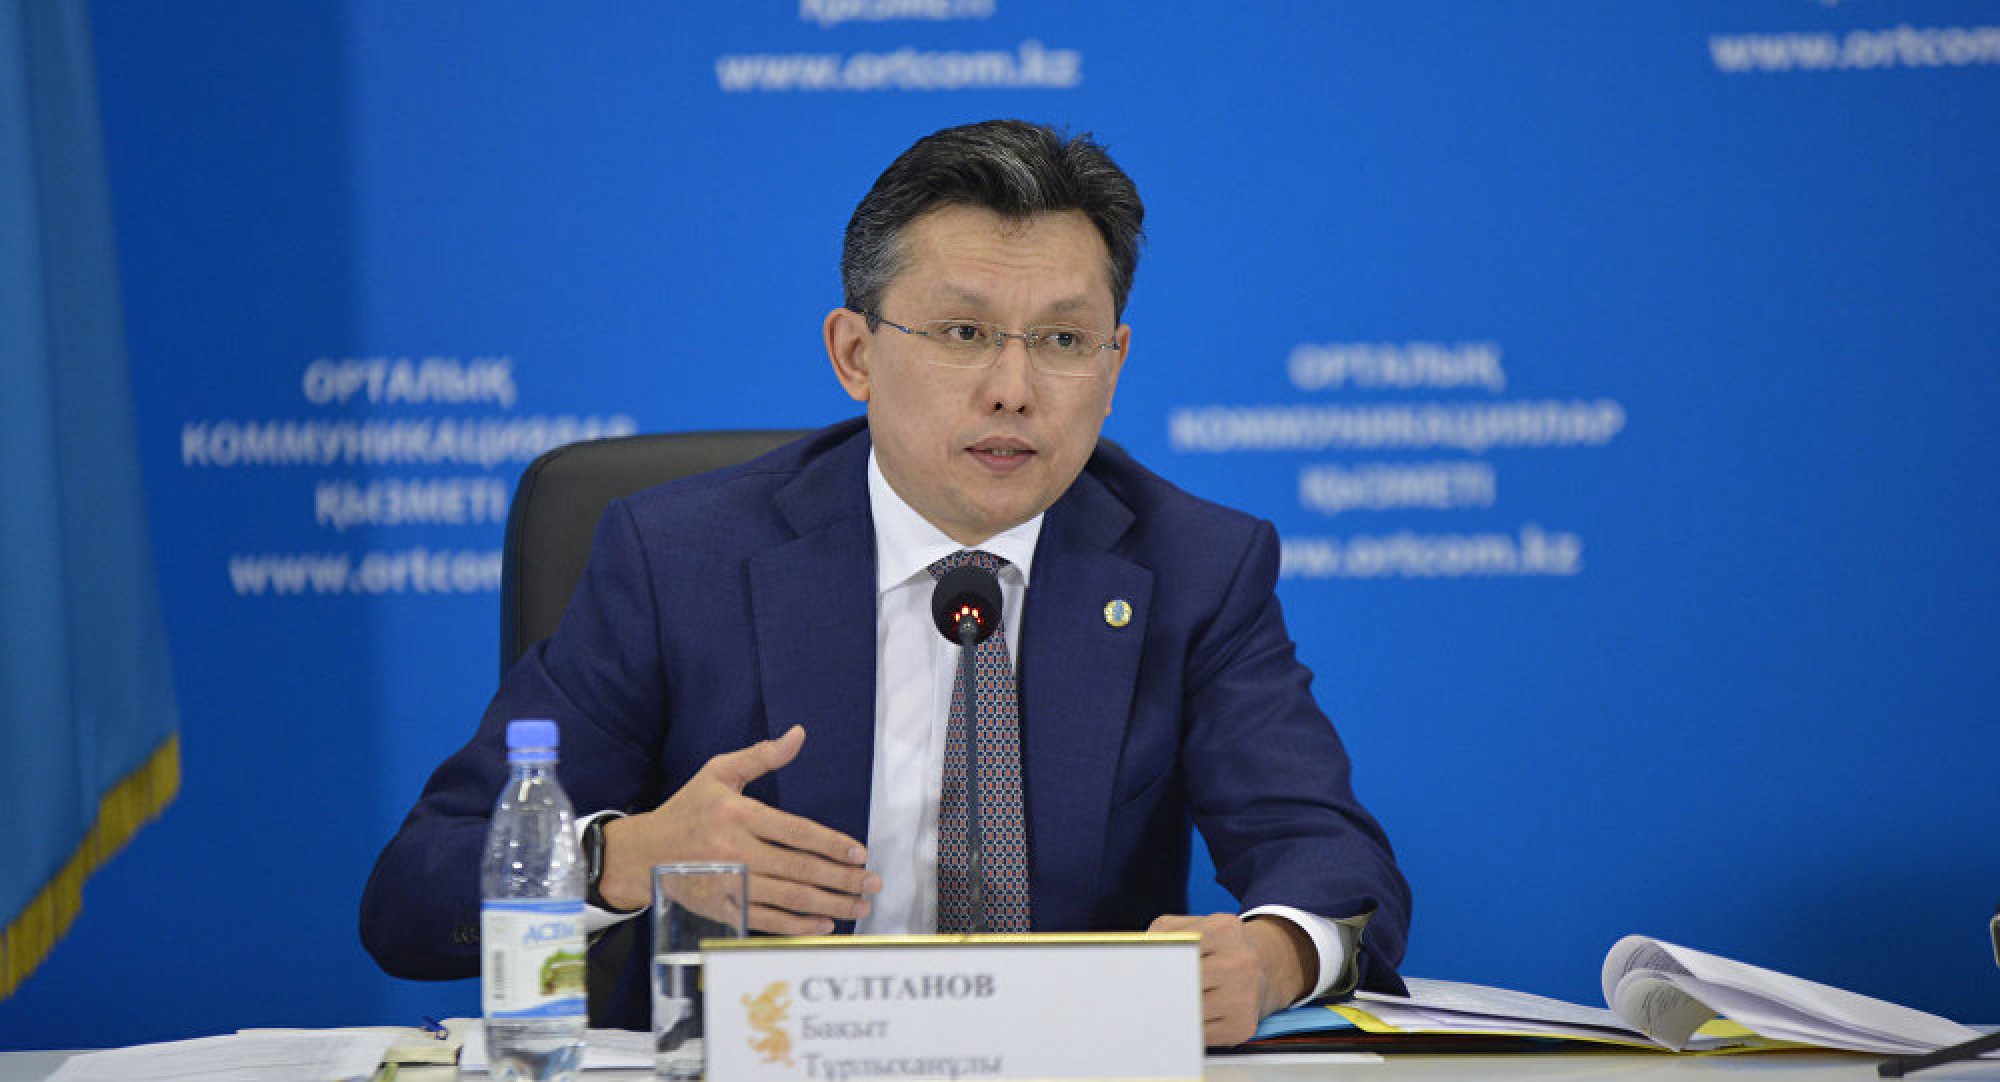 Торгпредства Казахстана за рубежом: до конца текущего года  будут открыты дополнительные офисы  